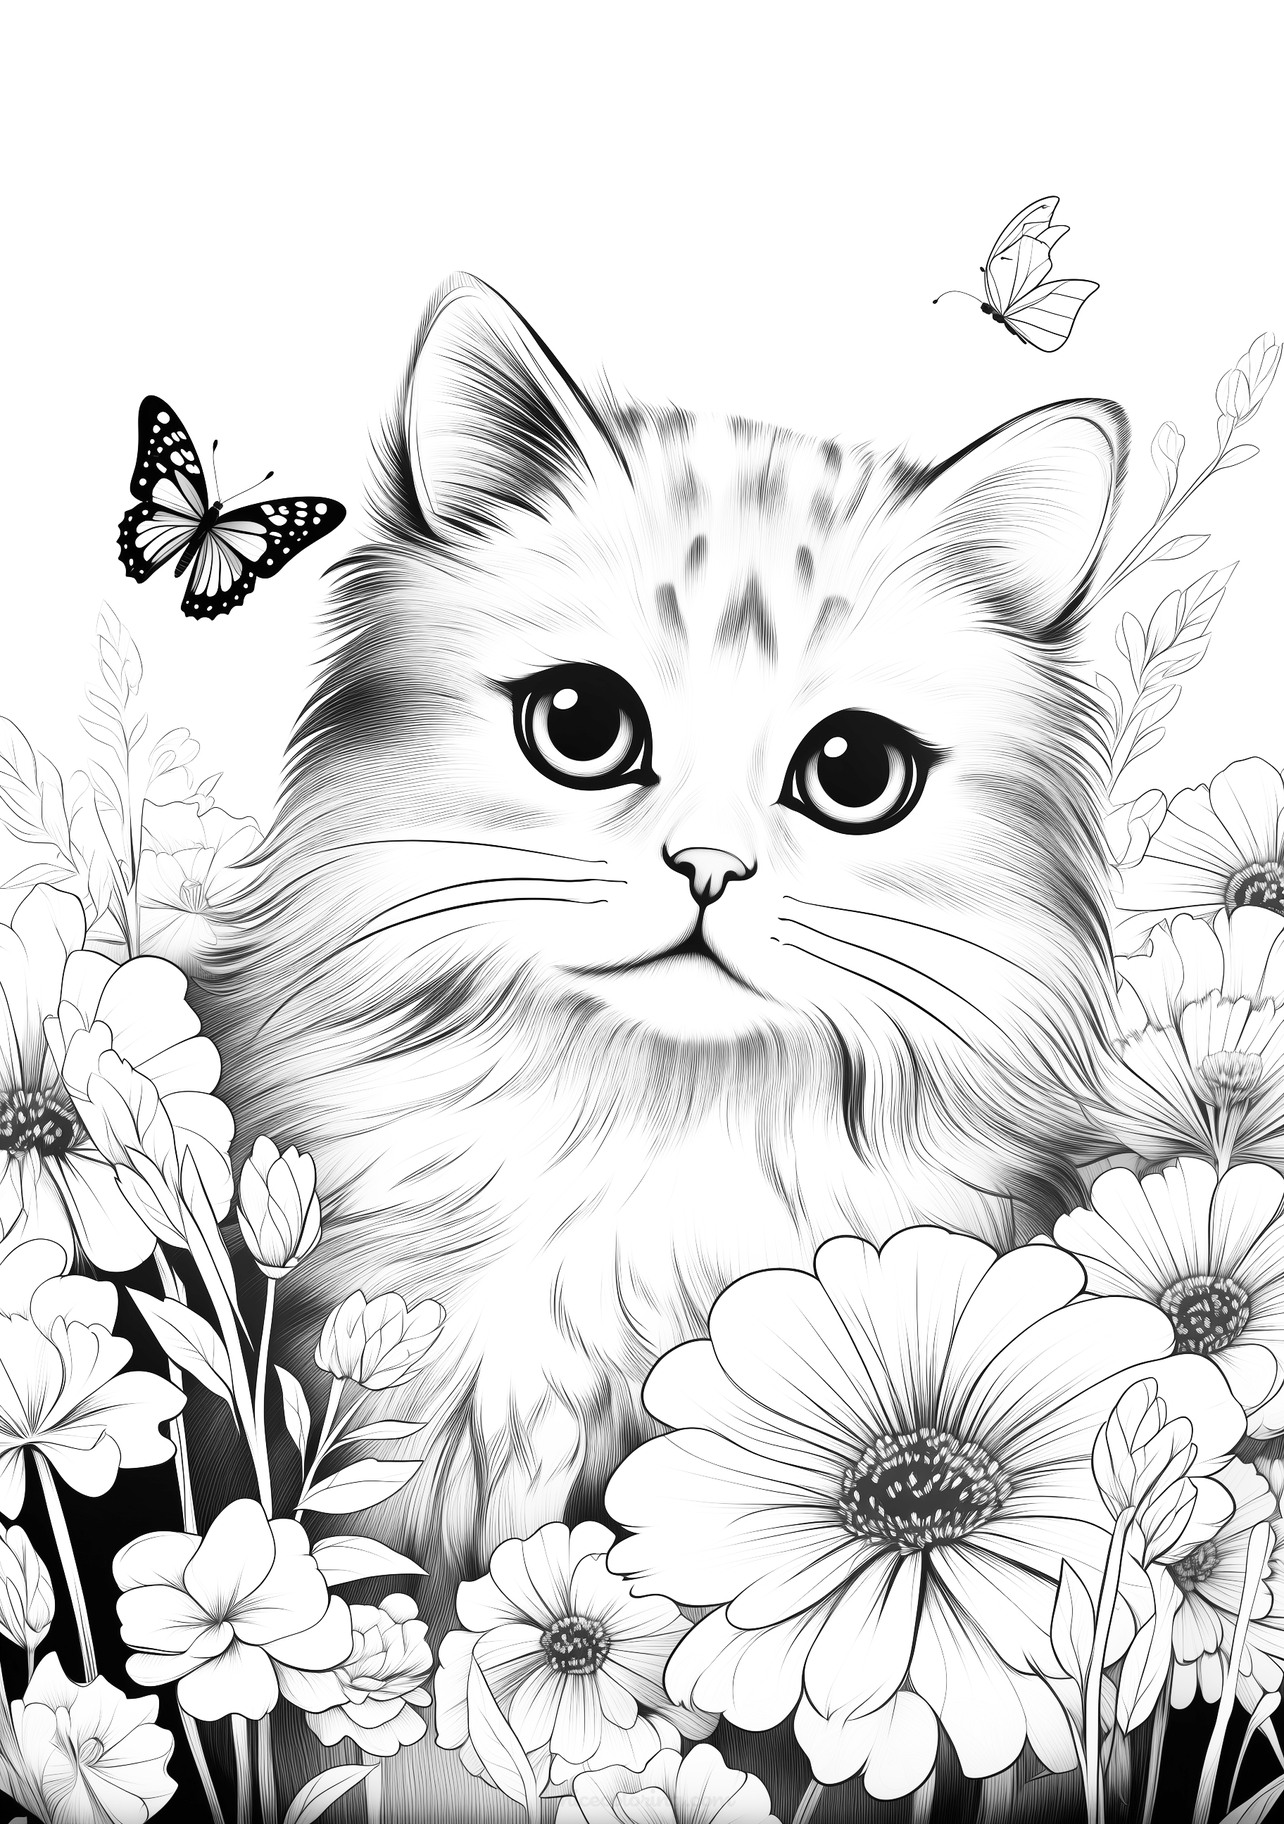 Eine flauschige Katze beobachtet einen Schmetterling neben Blumen